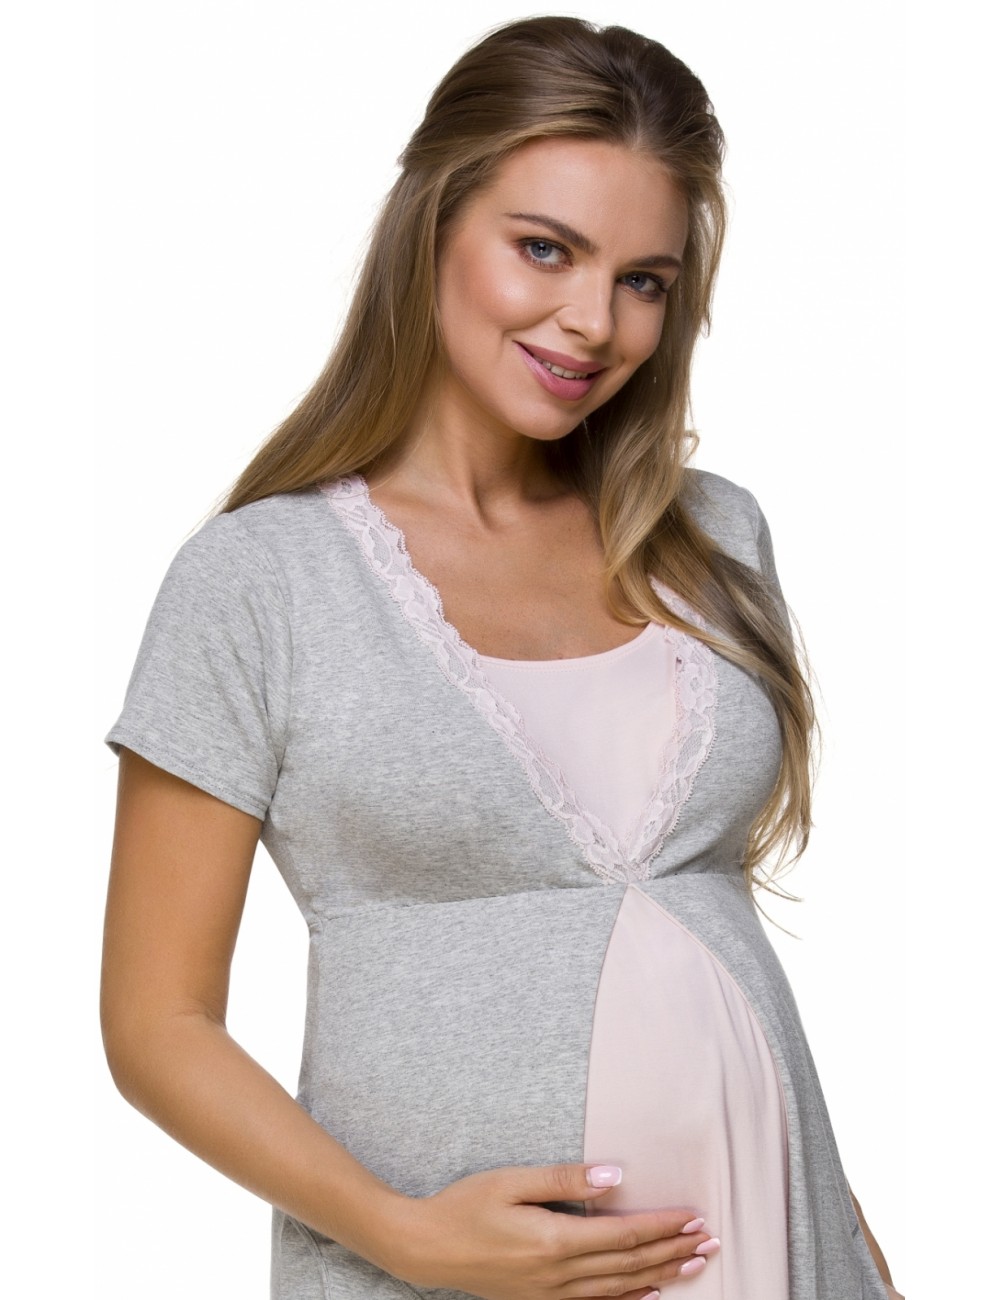 Nočná košeľa na dojčenie - Dámska materská košieľka - Tehotenská móda 3125